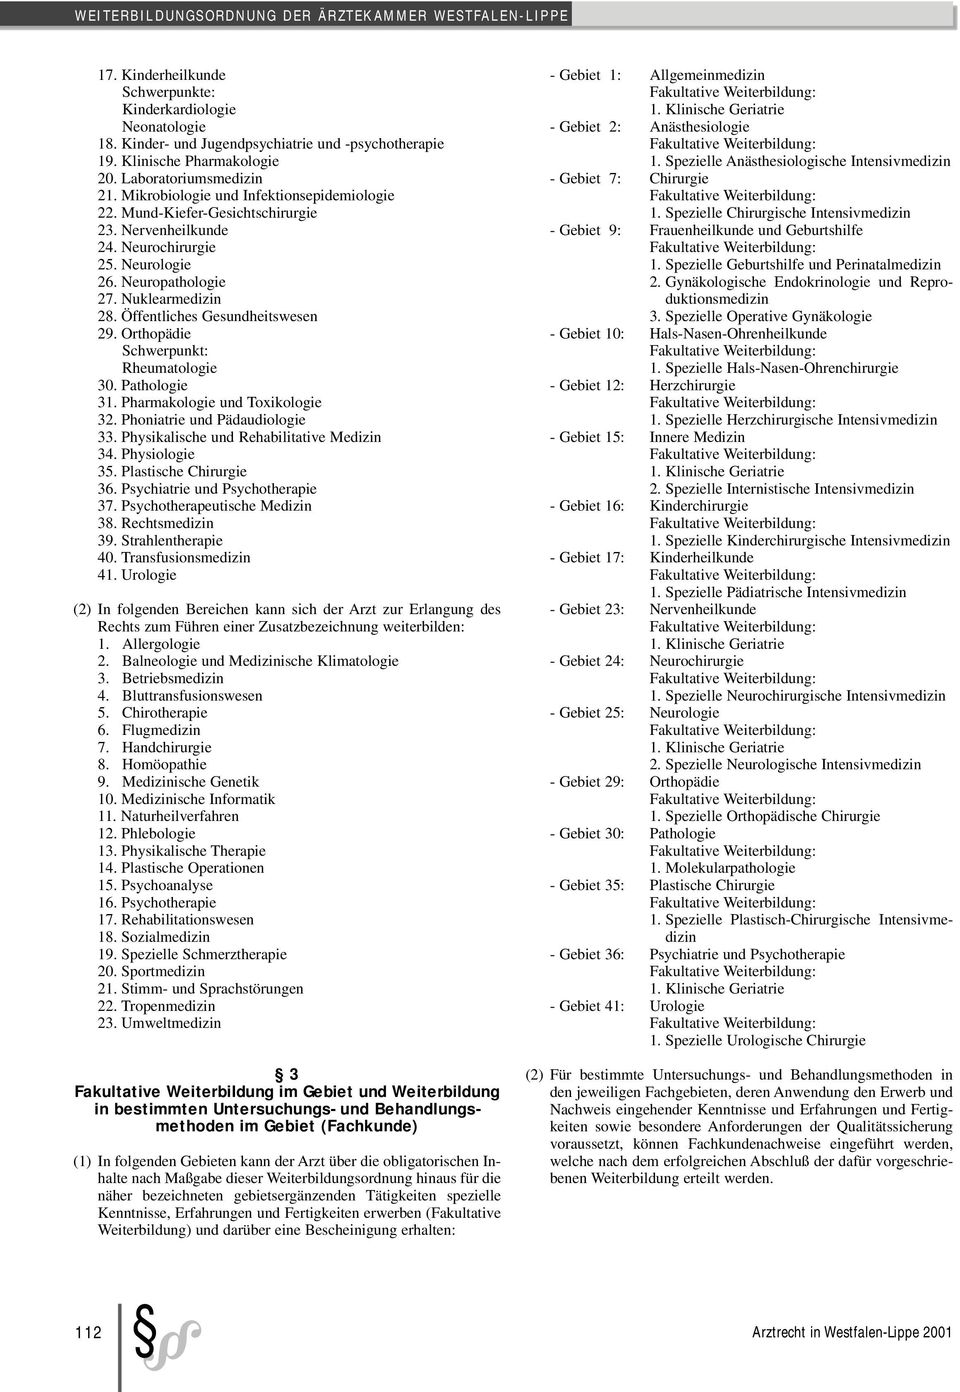 Öffentliches Gesundheitswesen 29. Orthopädie Schwerpunkt: Rheumatologie 30. Pathologie 31. Pharmakologie und Toxikologie 32. Phoniatrie und Pädaudiologie 33.